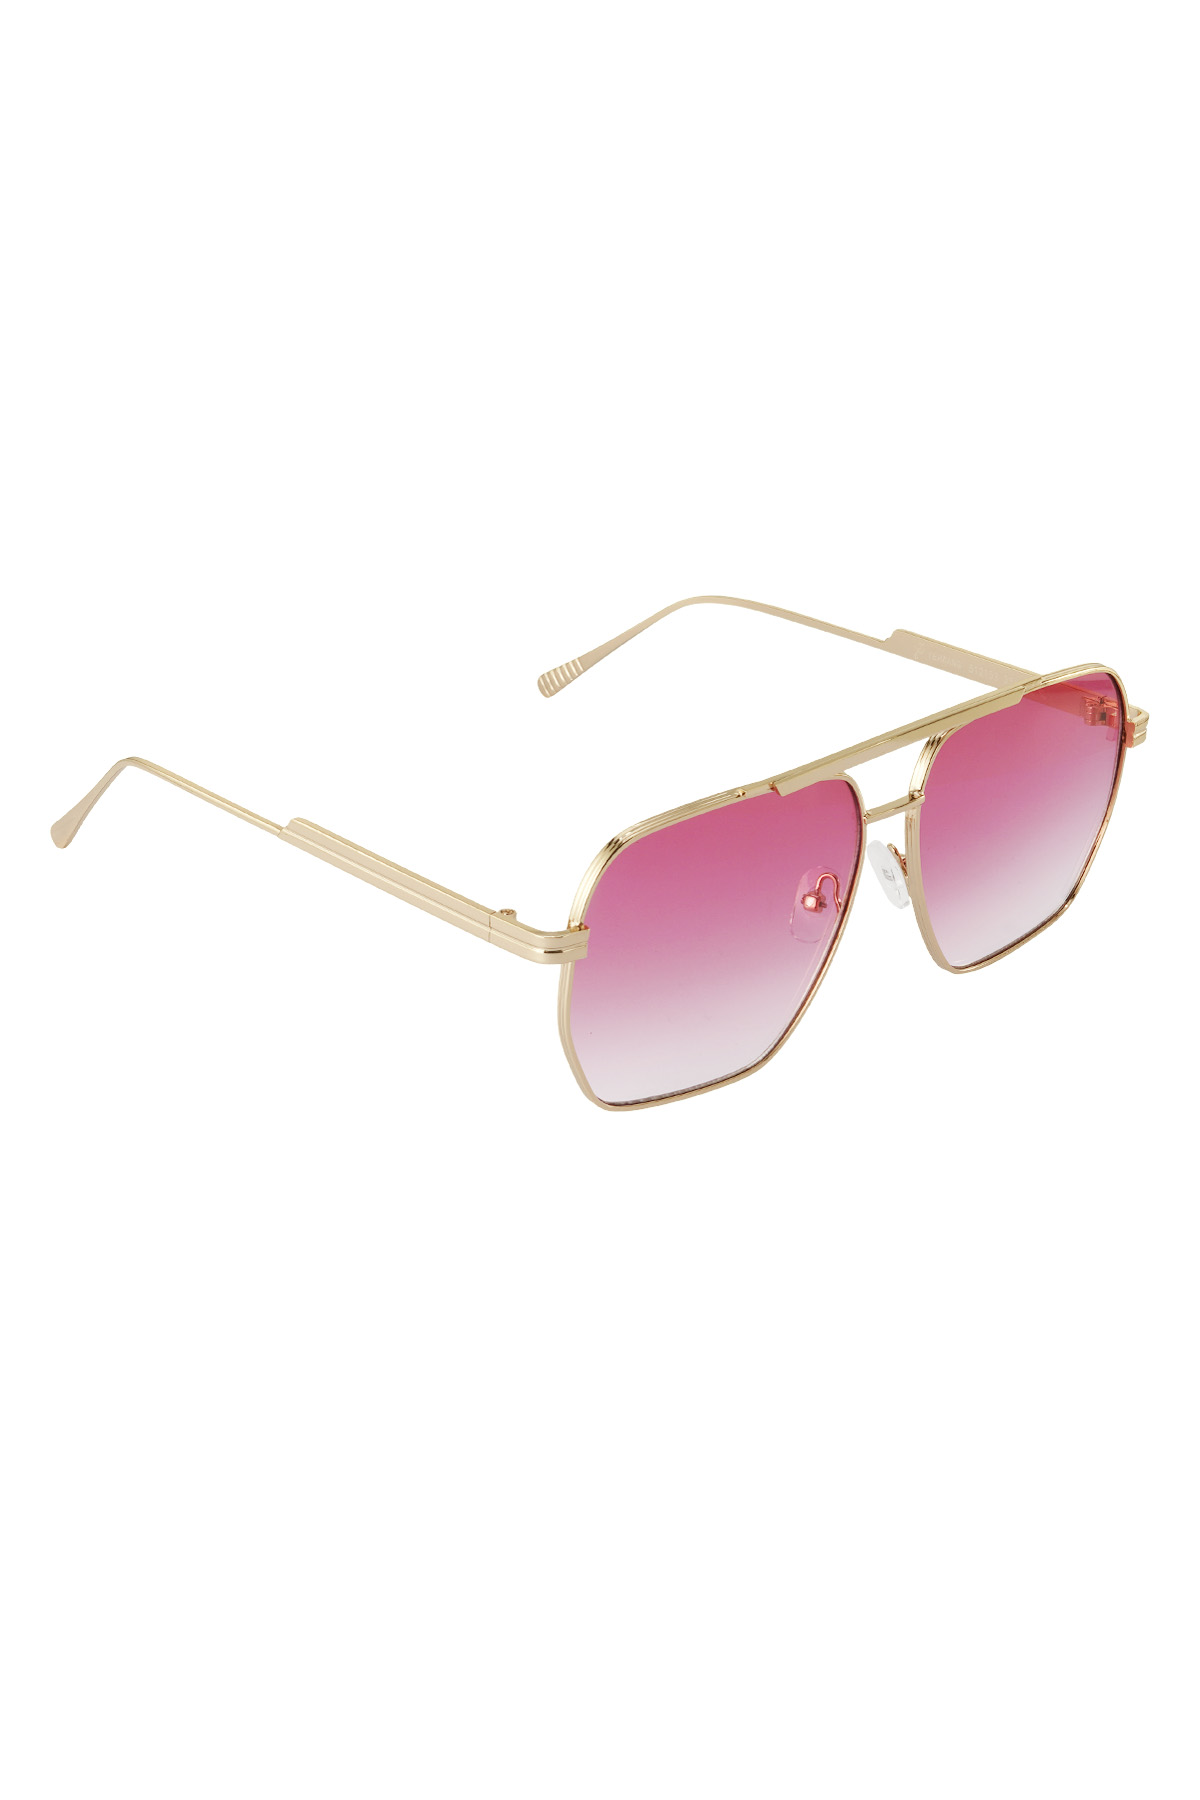 Metal yazlık güneş gözlüğü - Pembe ve altın rengi